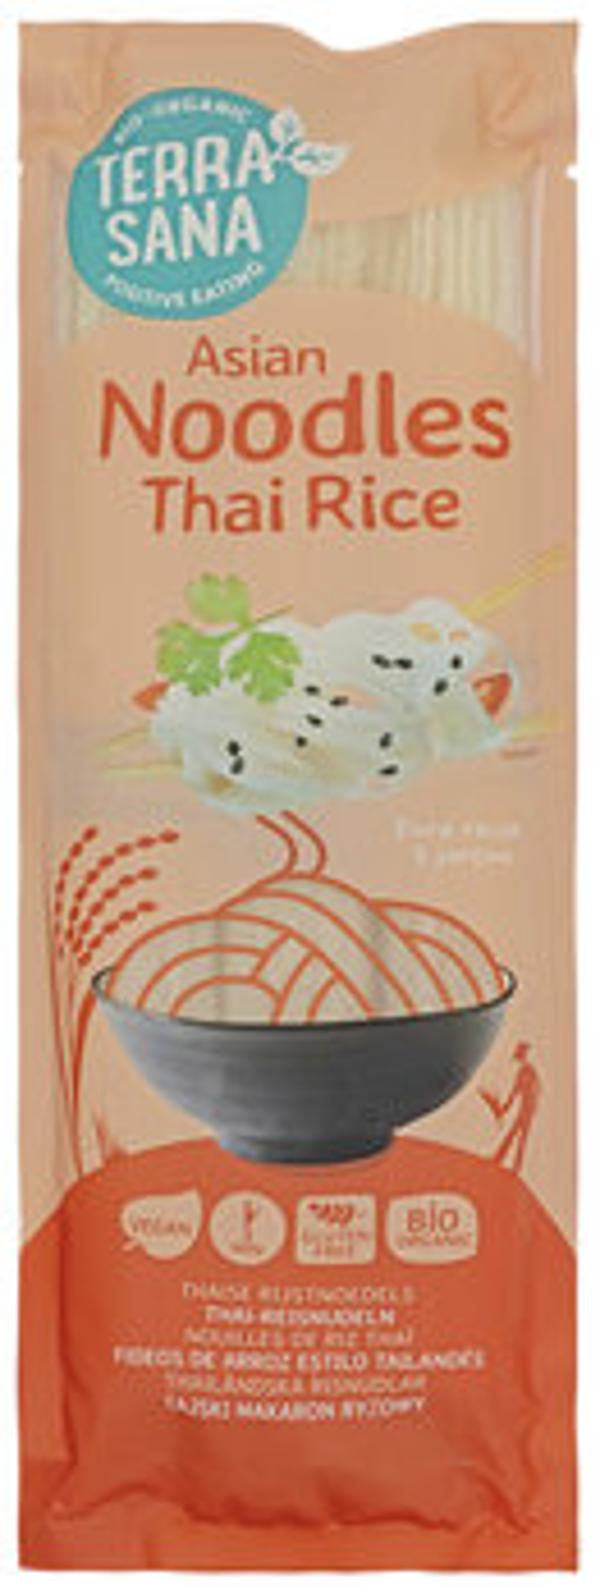 Produktfoto zu Nudeln aus thailändischem Reis